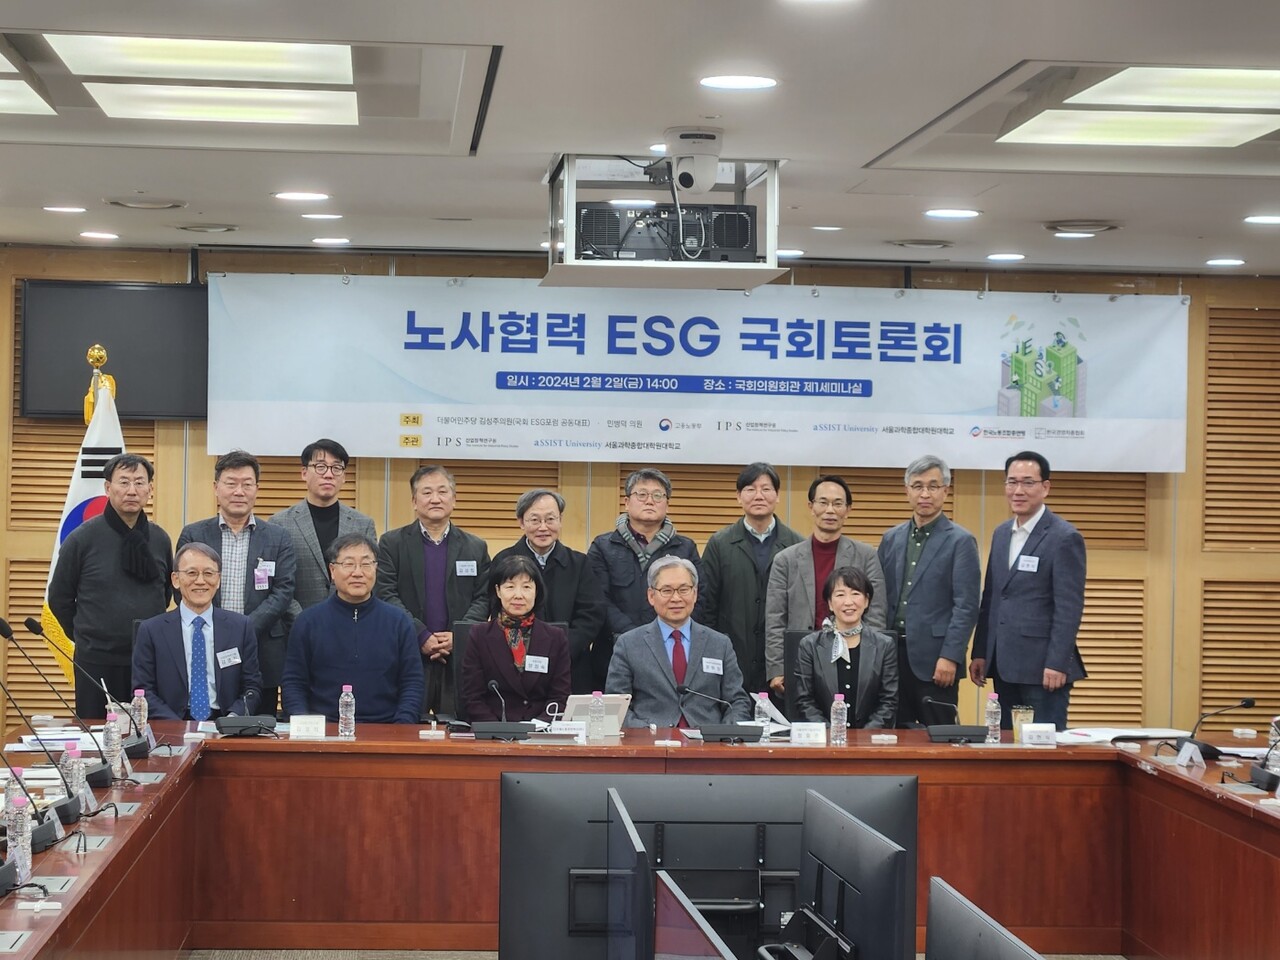  ‘노사협력 ESG국회토론회’ 참가자